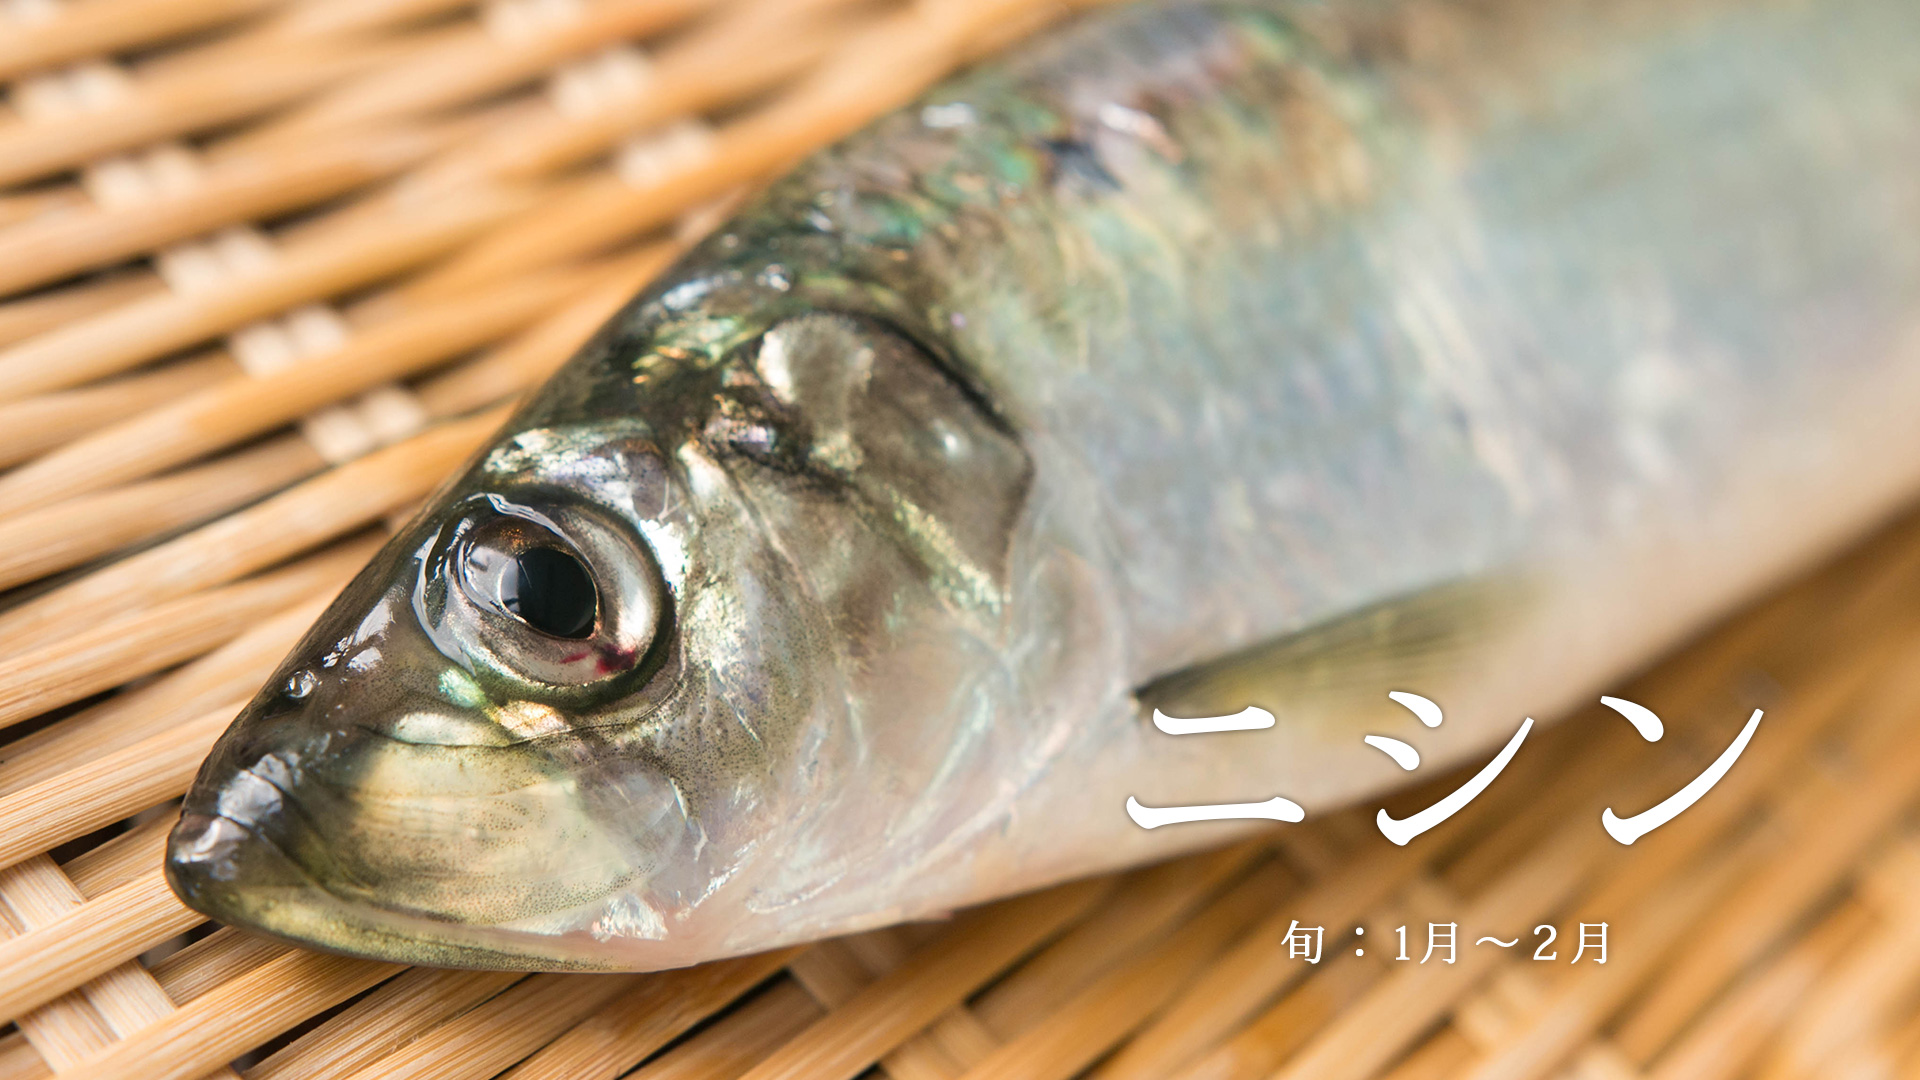 お刺身鮮度 春のニシン 函館から産地仕入れ 旬の魚 さかな通信 By Uopochi